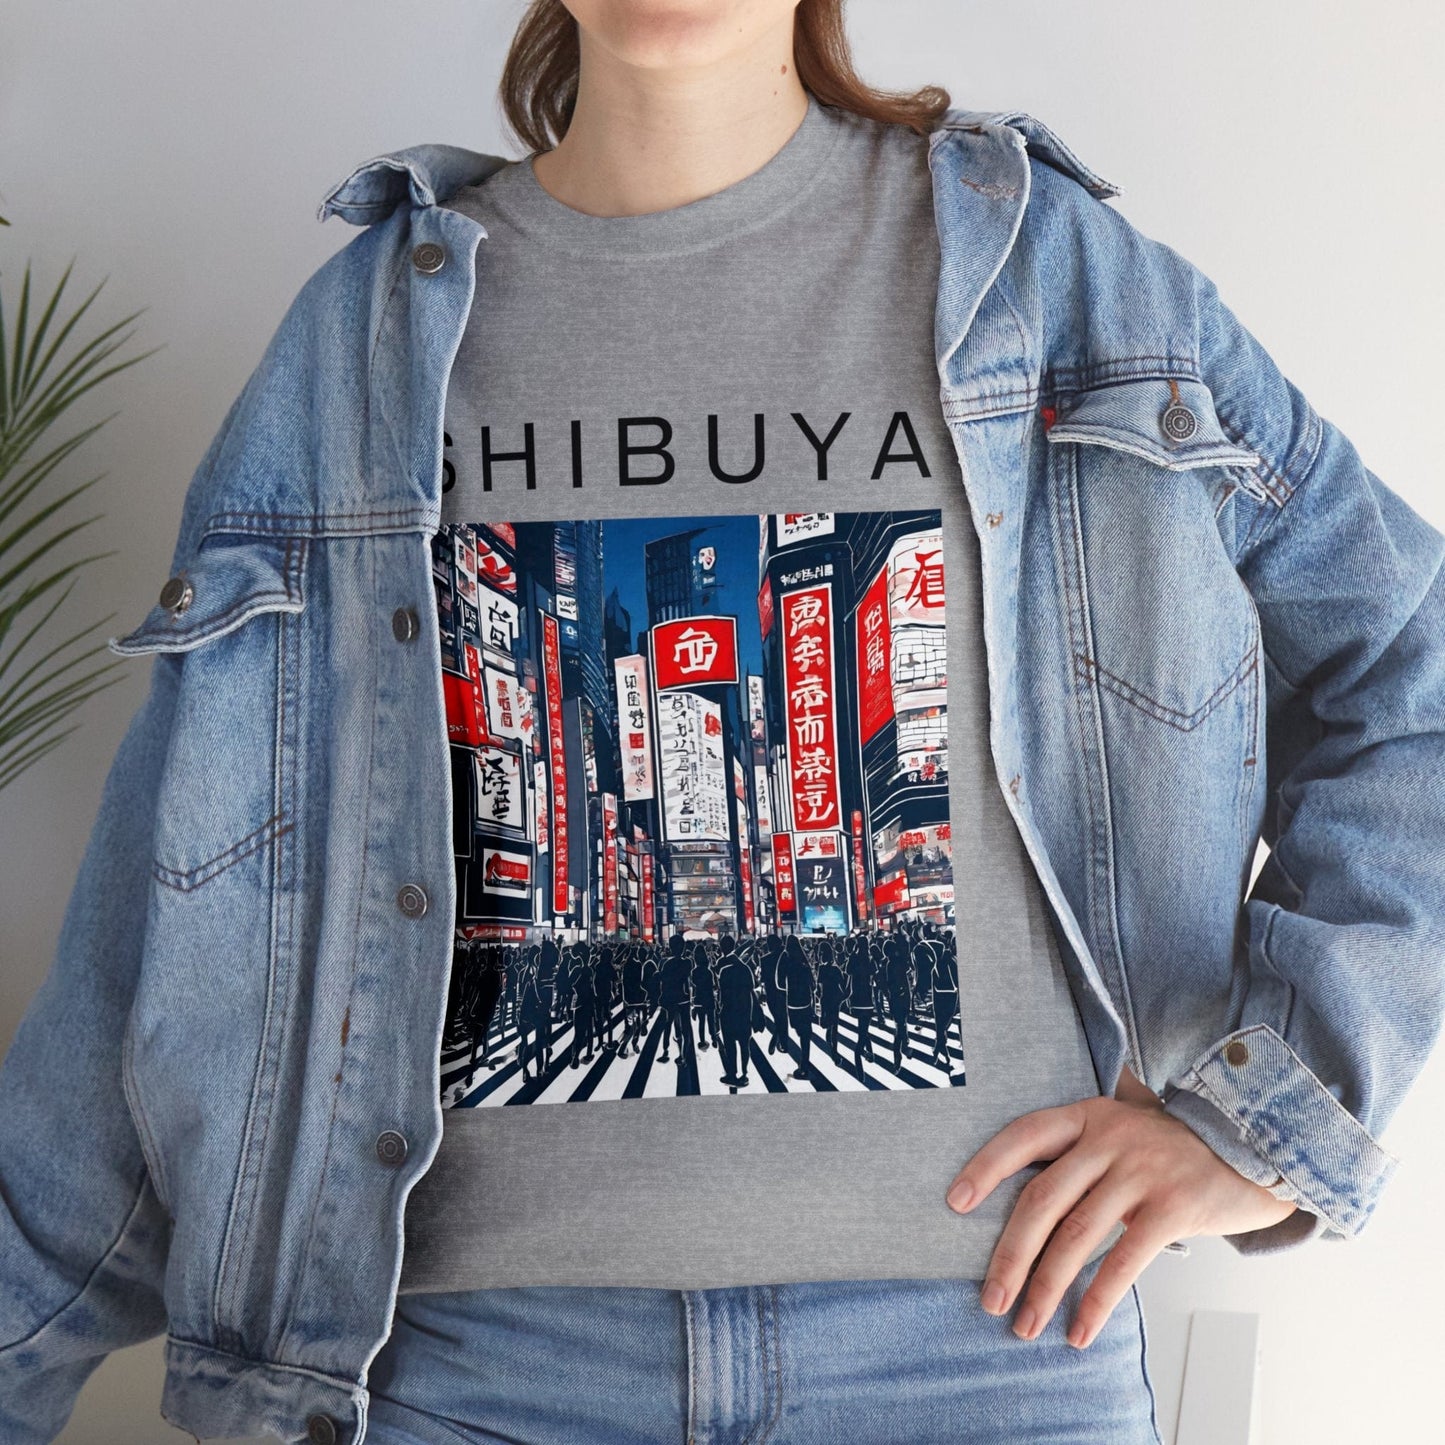 Japanese Shirt. Shibuya Tokyo Shirt. Japanese Gifts. Harajuku Shirt. Travel Shirt. Travel Gift. Kanji Shirt. Japanese Streetwear | Souvenir from Japan Unisex Tee Flashlander